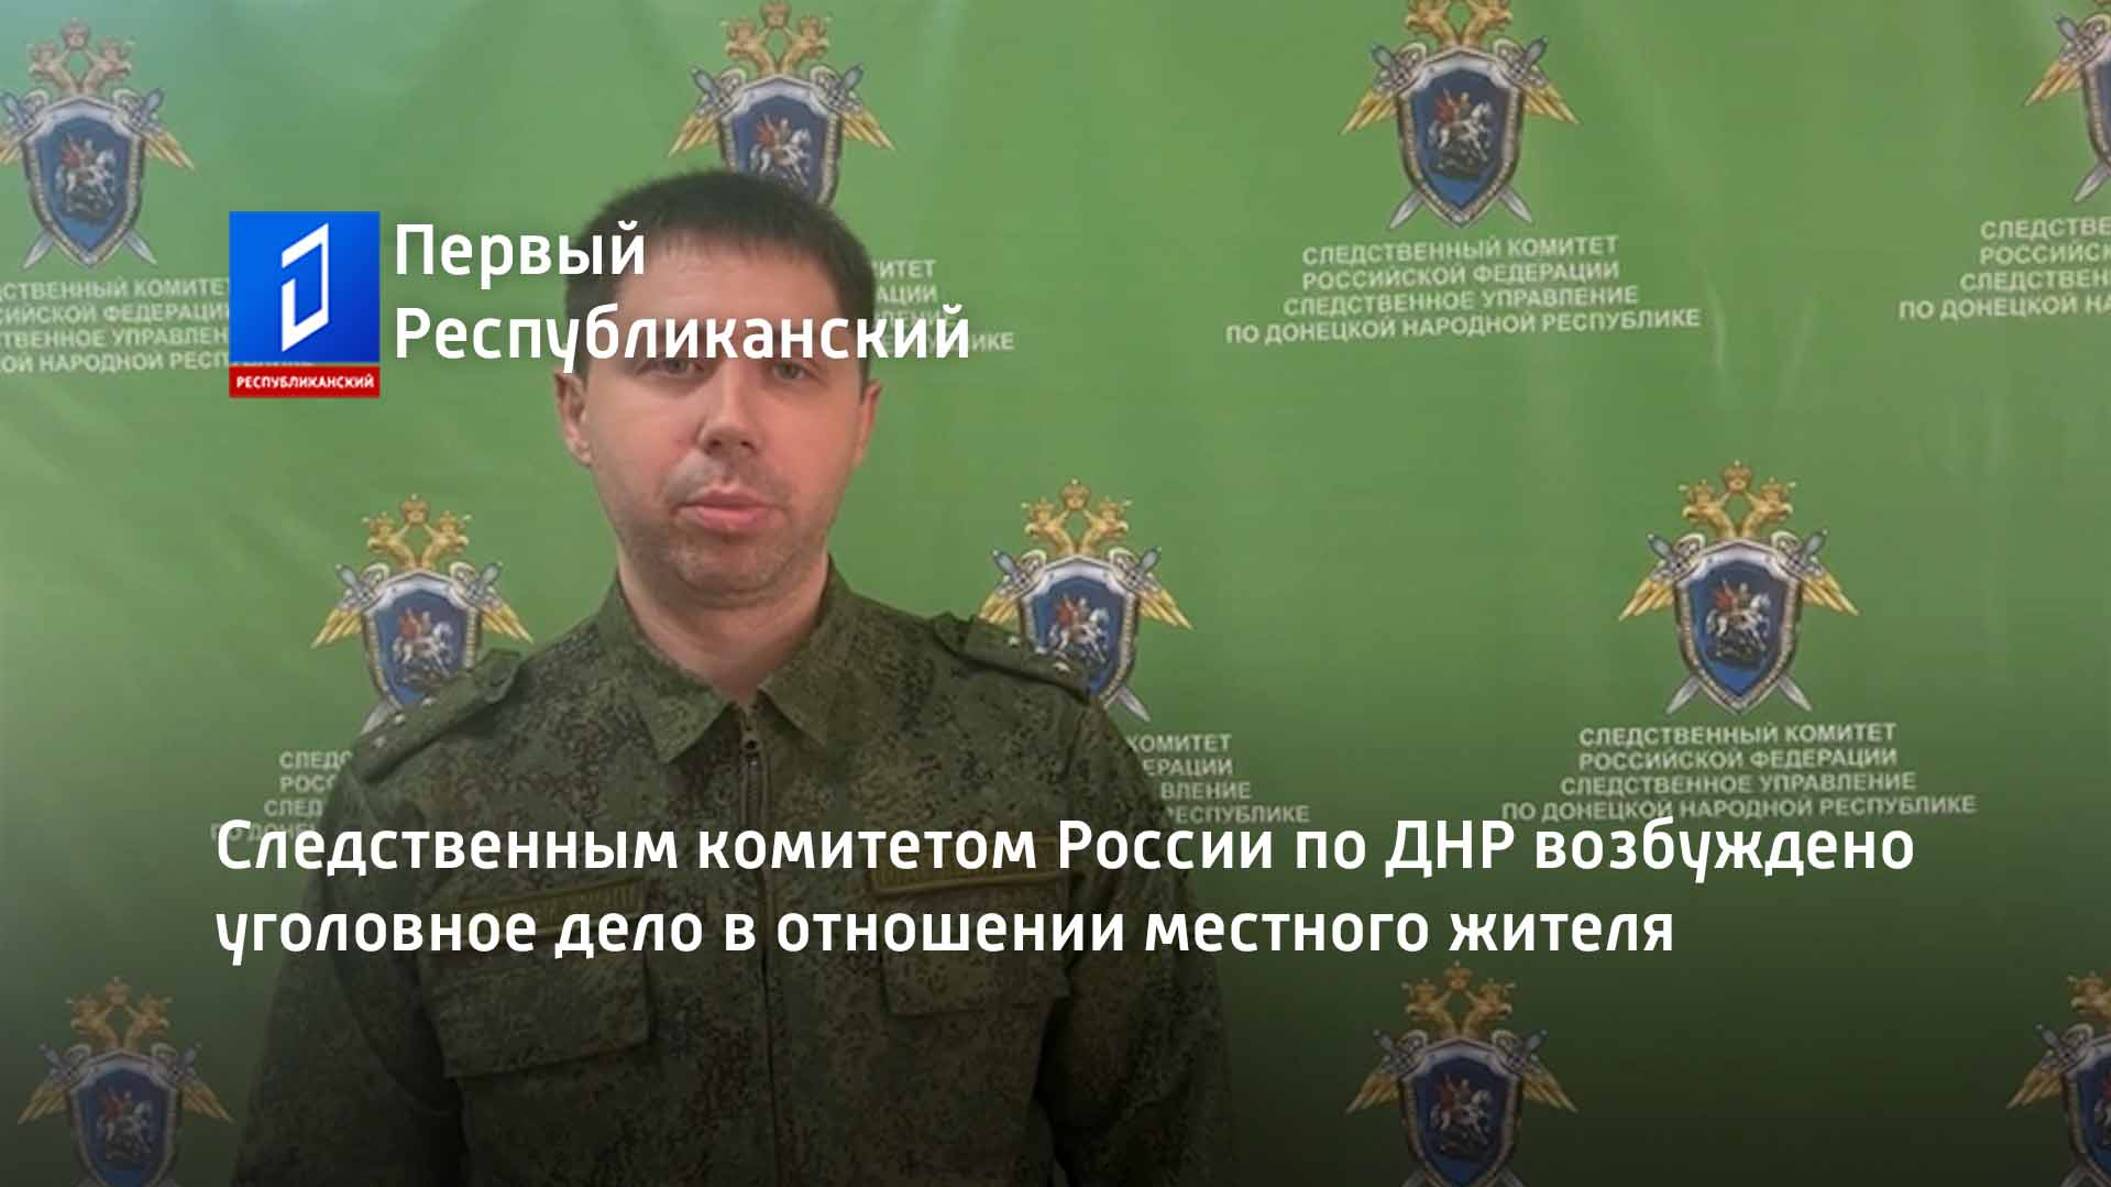 Следственным комитетом России по ДНР возбуждено уголовное дело в отношении местного жителя